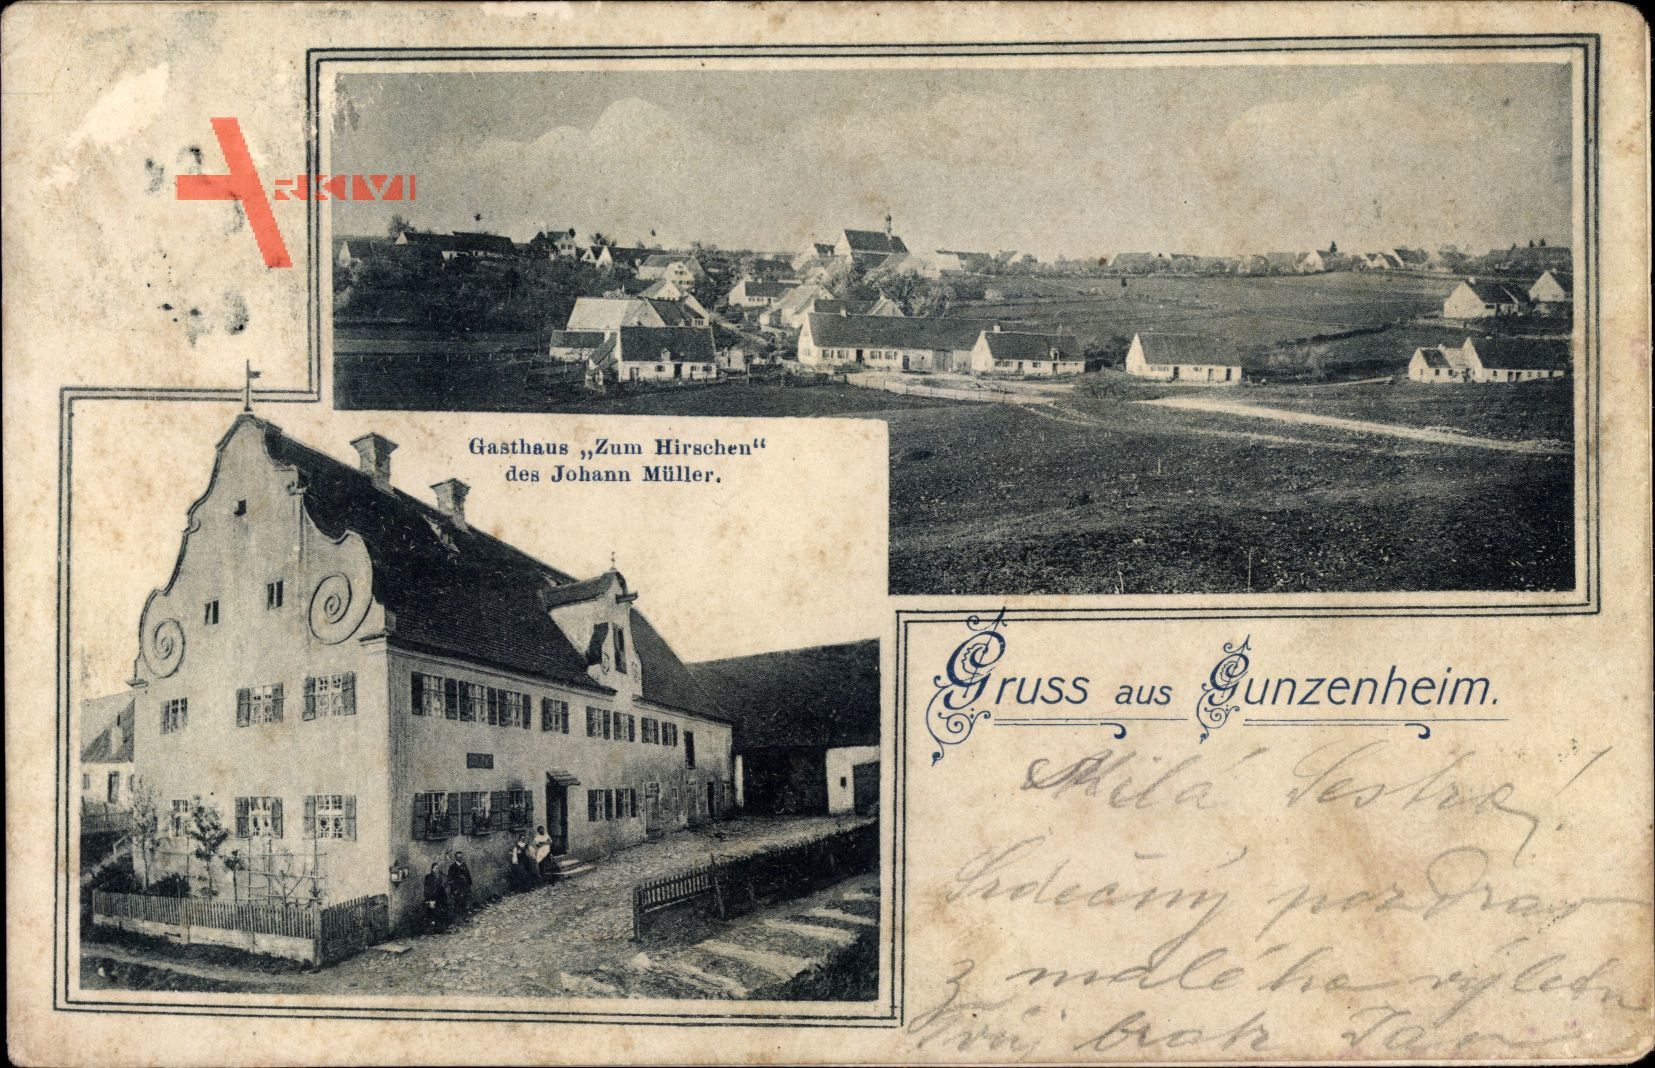 Gunzenheim Kaisheim im schwäbischen Kreis Donau Ries, Gasthaus zum Hirschen, Inh. Johann Müller